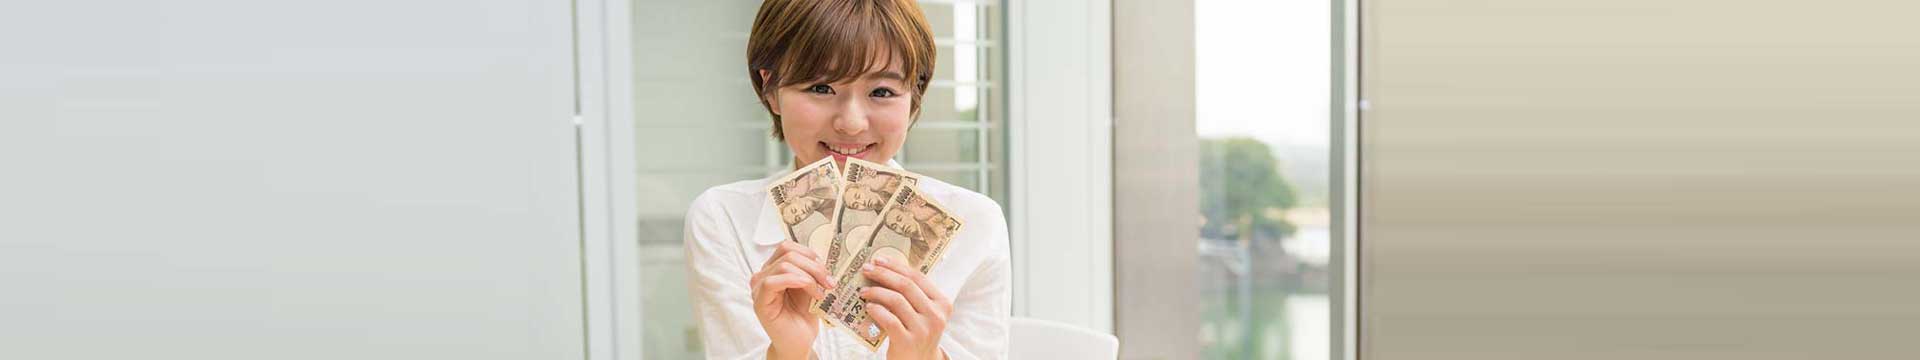 4 วิธีใช้เงินแบบเศรษฐีญี่ปุ่น